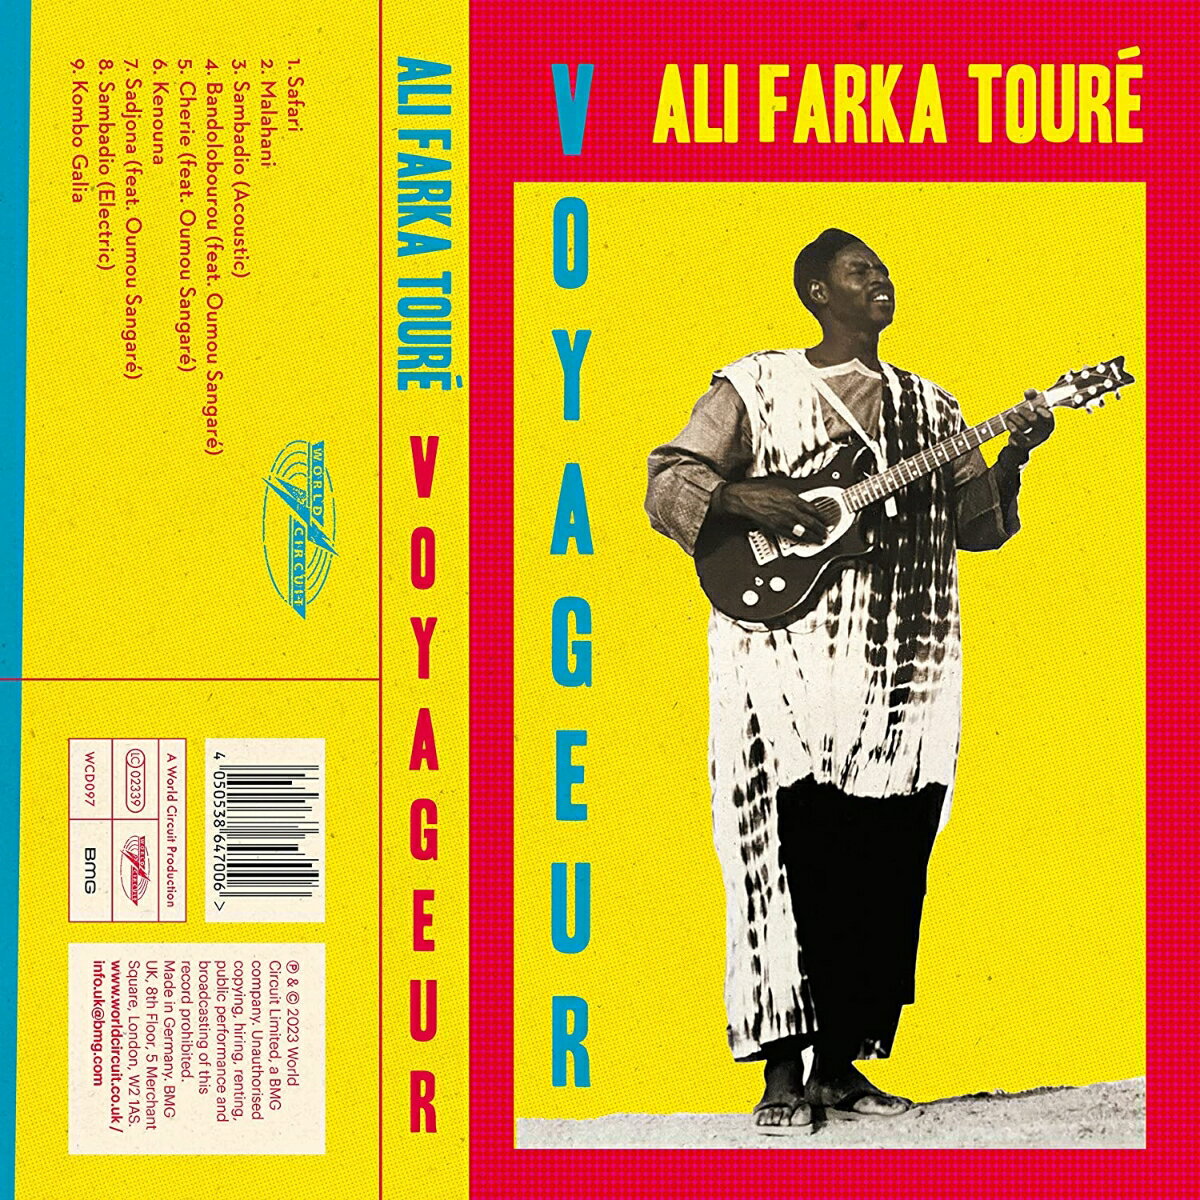 西アフリカを代表するマリ出身のギタリスト兼シンガーソングライター、アリ・ファルカ・トゥーレがそのキャリアの中で、様々な国、様々な場所でレコーディングした音源に今、新たな光があたる。

キング・オブ・デザート・ブルースによる貴重な未発表音源を1つに集めたアルバム『VOYAGEUR』完成。

＜収録内容＞
1. Safari
2. Malahani
3. Sambadio (Acoustic)
4. Bandoloborou (feat. Oumou Sangare)
5. Cherie (feat. Oumou Sangare)
6. Kenouna
7. Sadjona (feat. Oumou Sangare)
8. Sambadio (Electric)
9. Kombo Galia